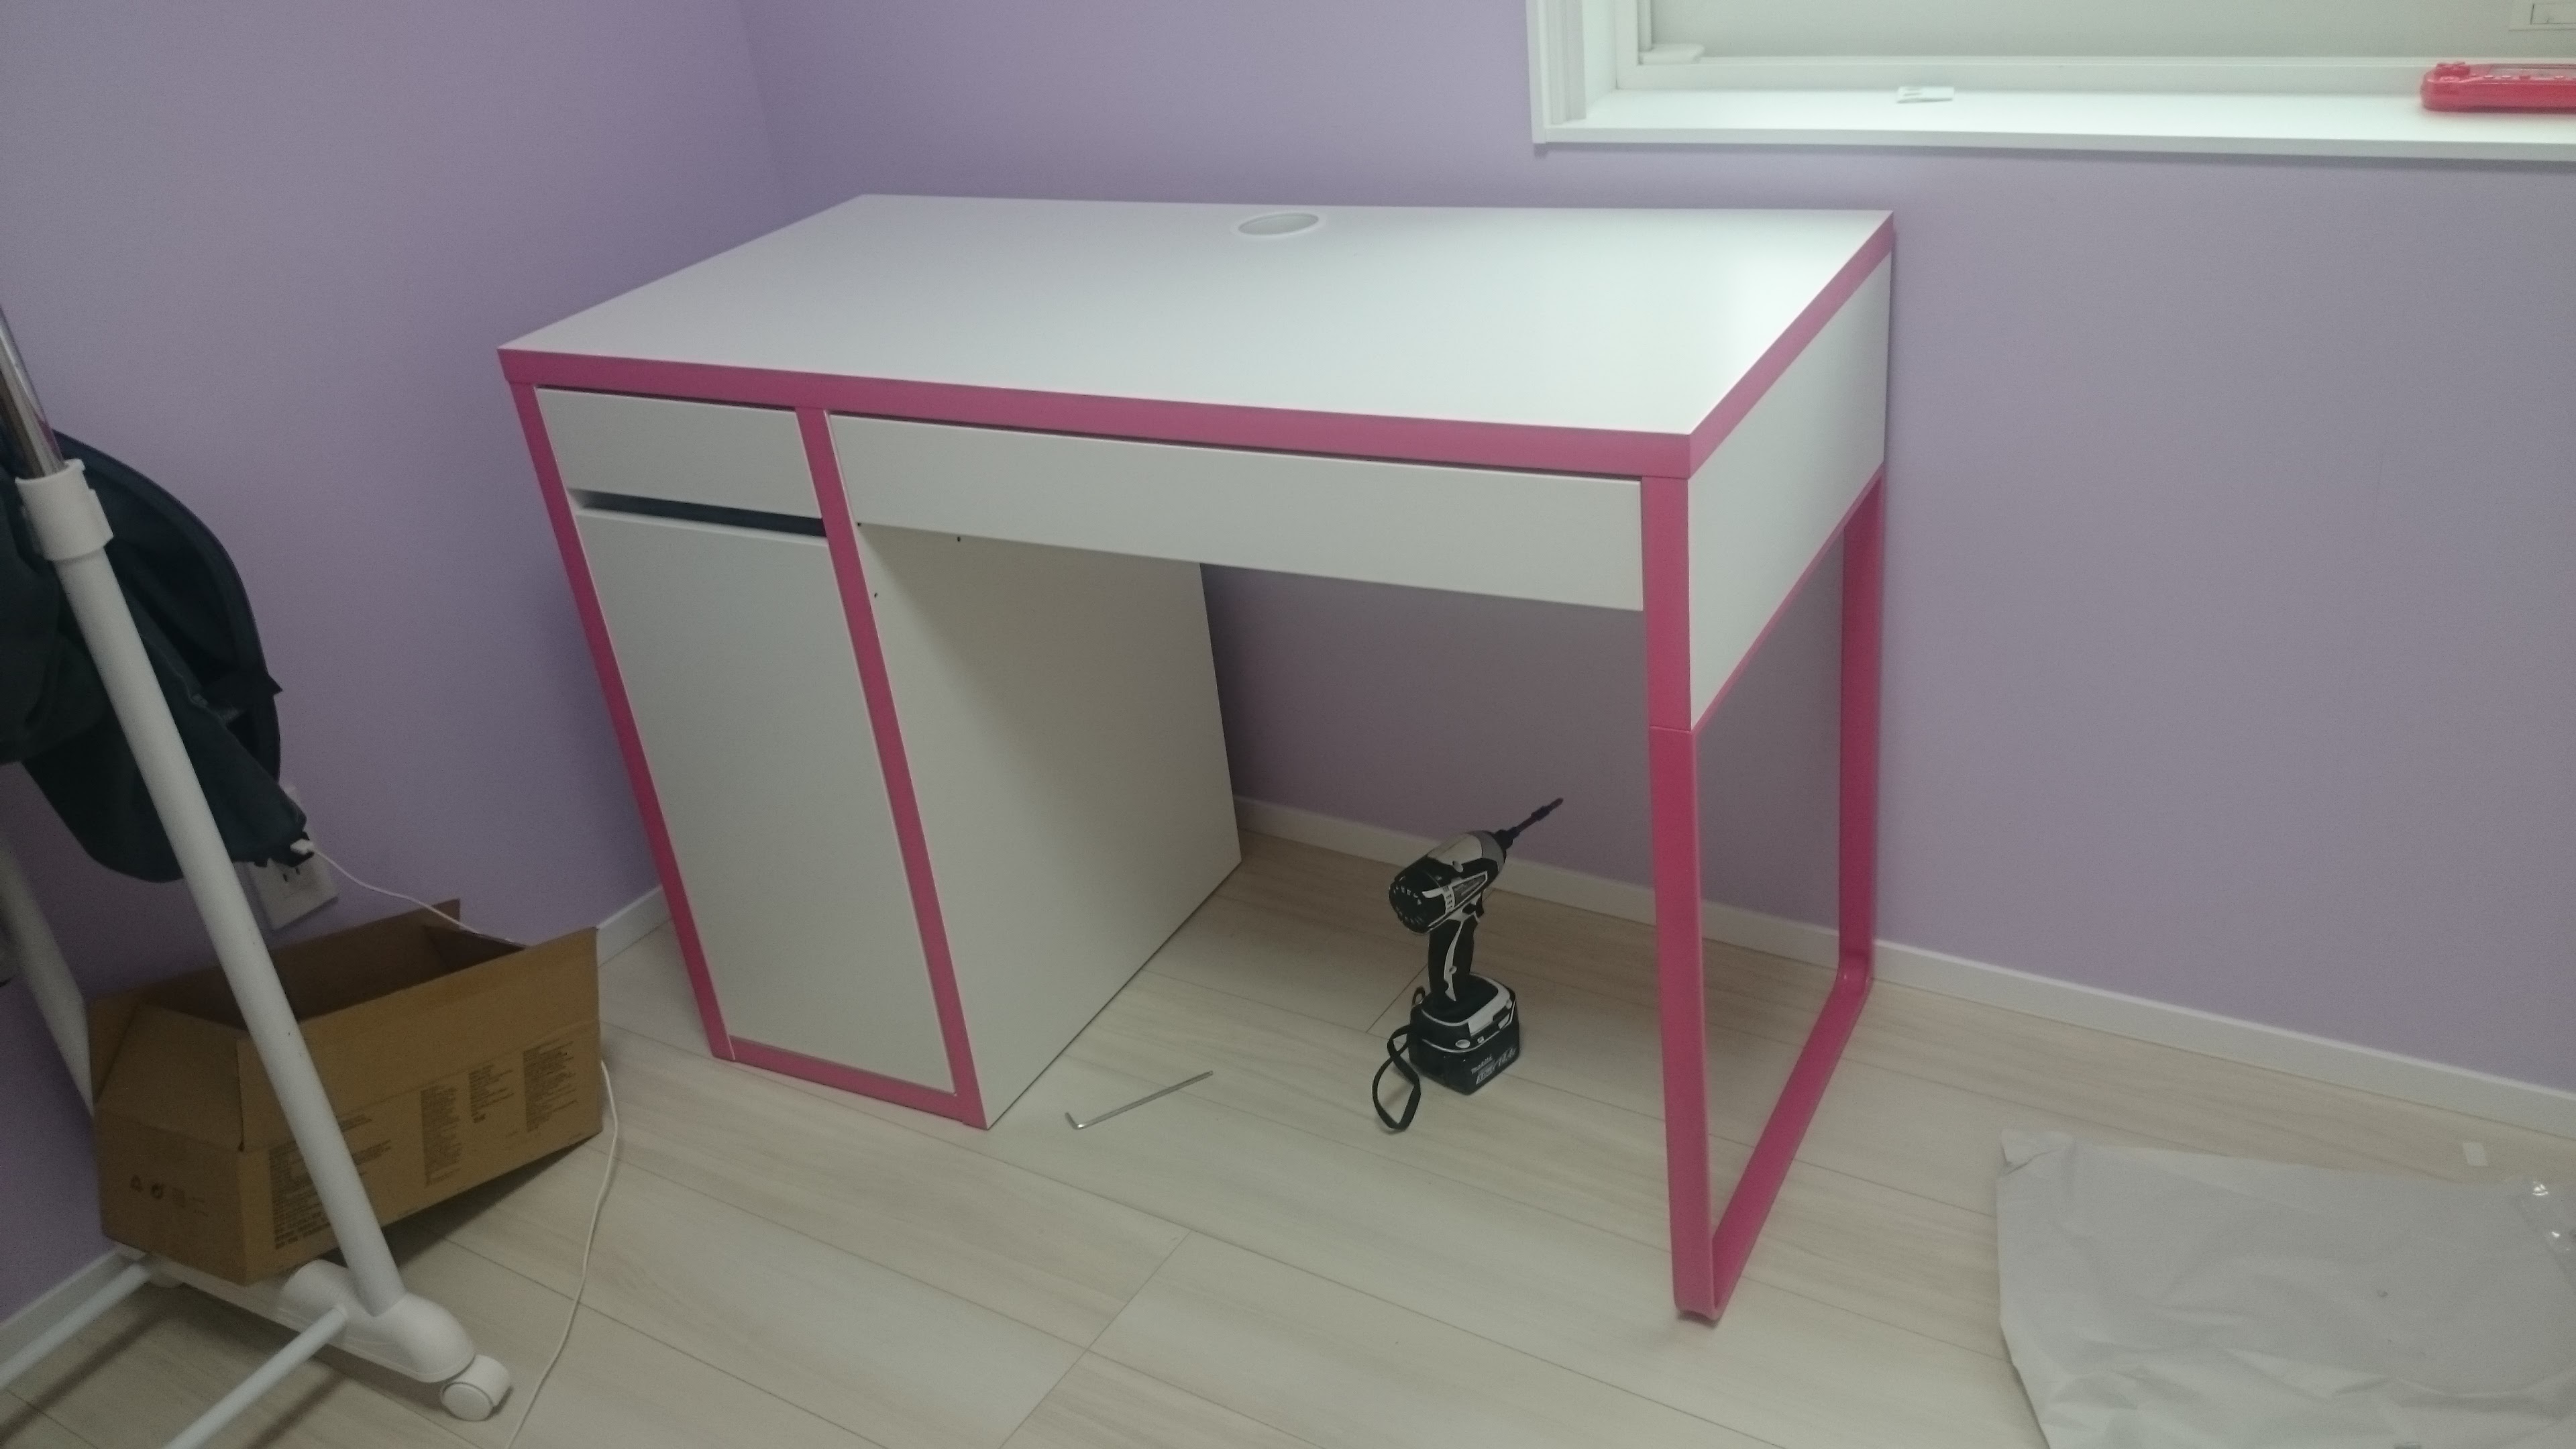 組立編 Ismart Ikea 女の子の子供部屋にイケアの机と椅子を入れまし